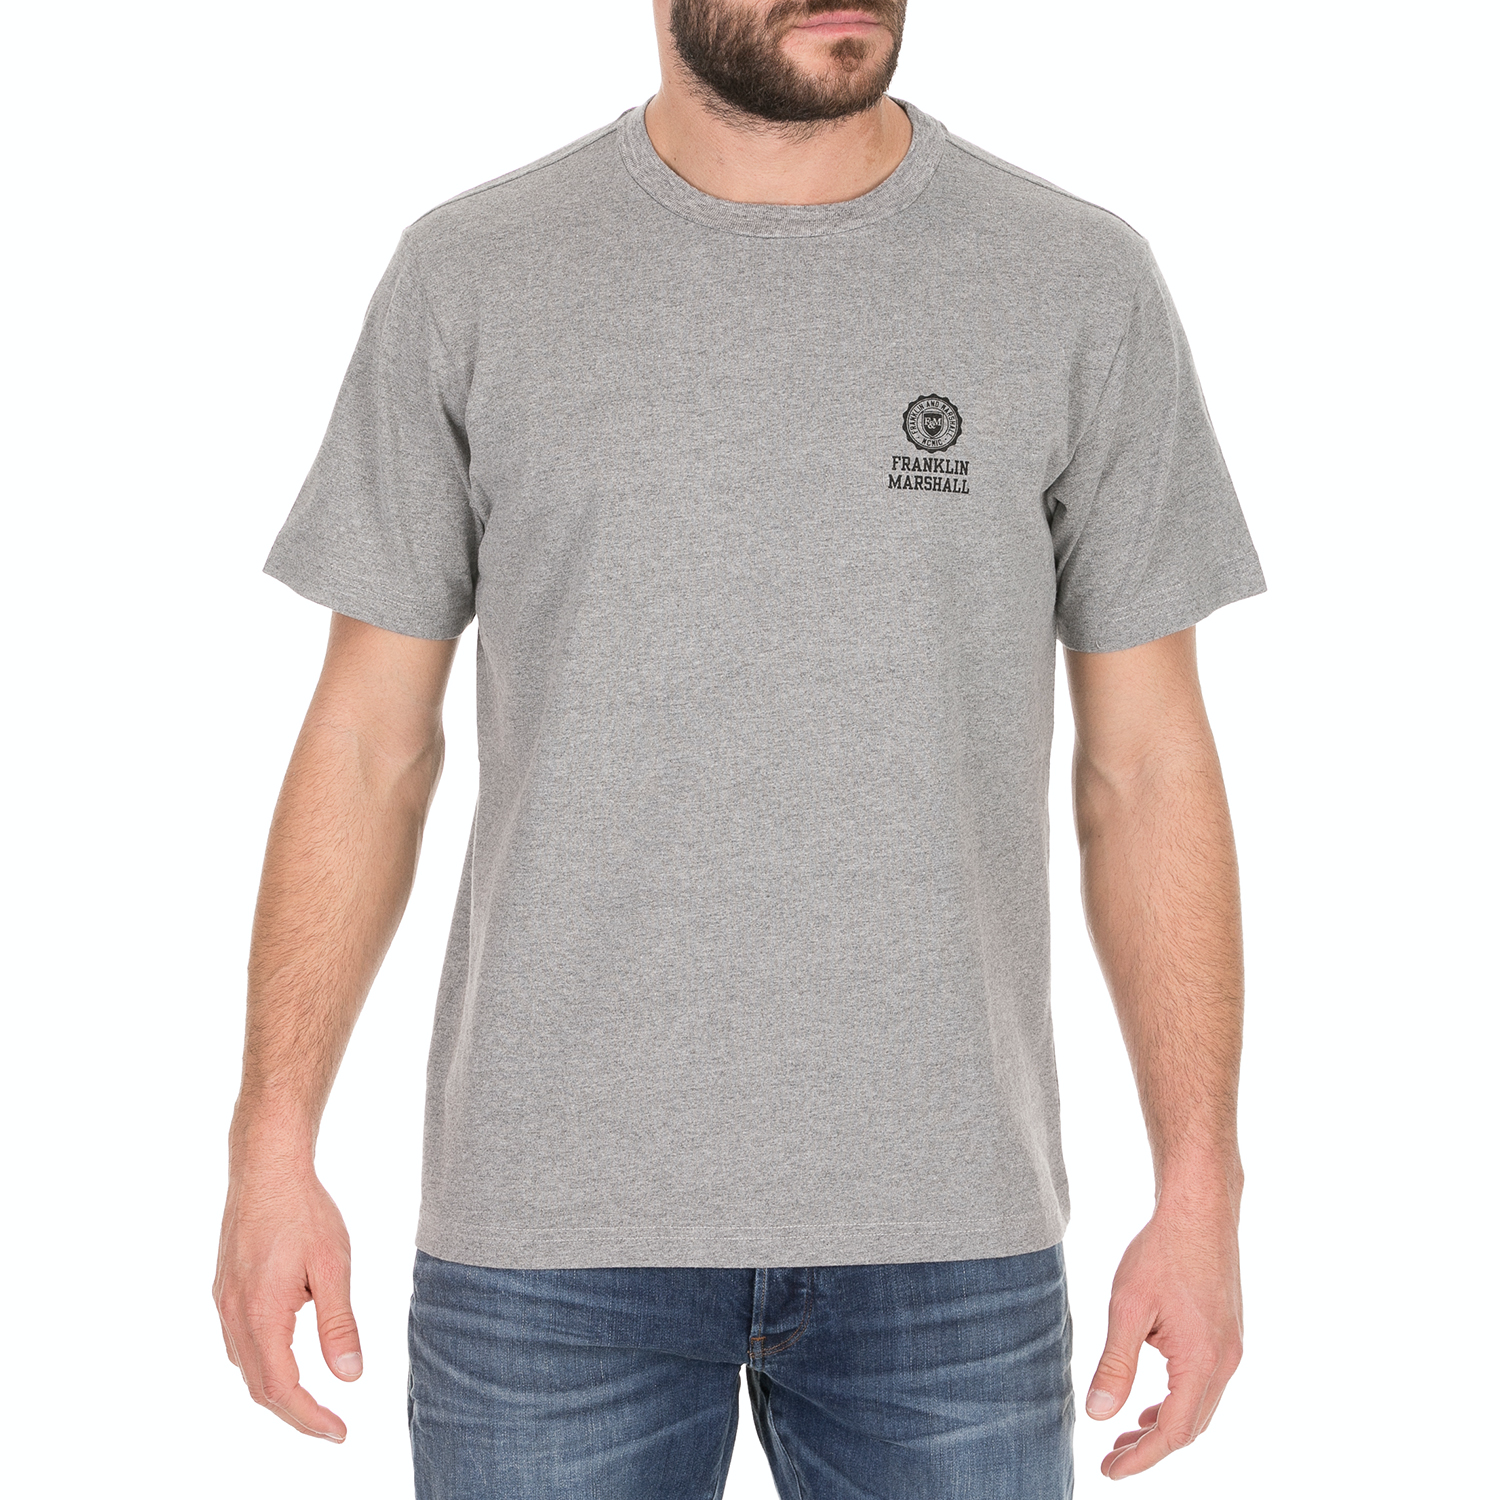 Ανδρικά/Ρούχα/Μπλούζες/Κοντομάνικες FRANKLIN & MARSHALL - Ανδρικό t-shirt FRANKLIN & MARSHALL γκρι